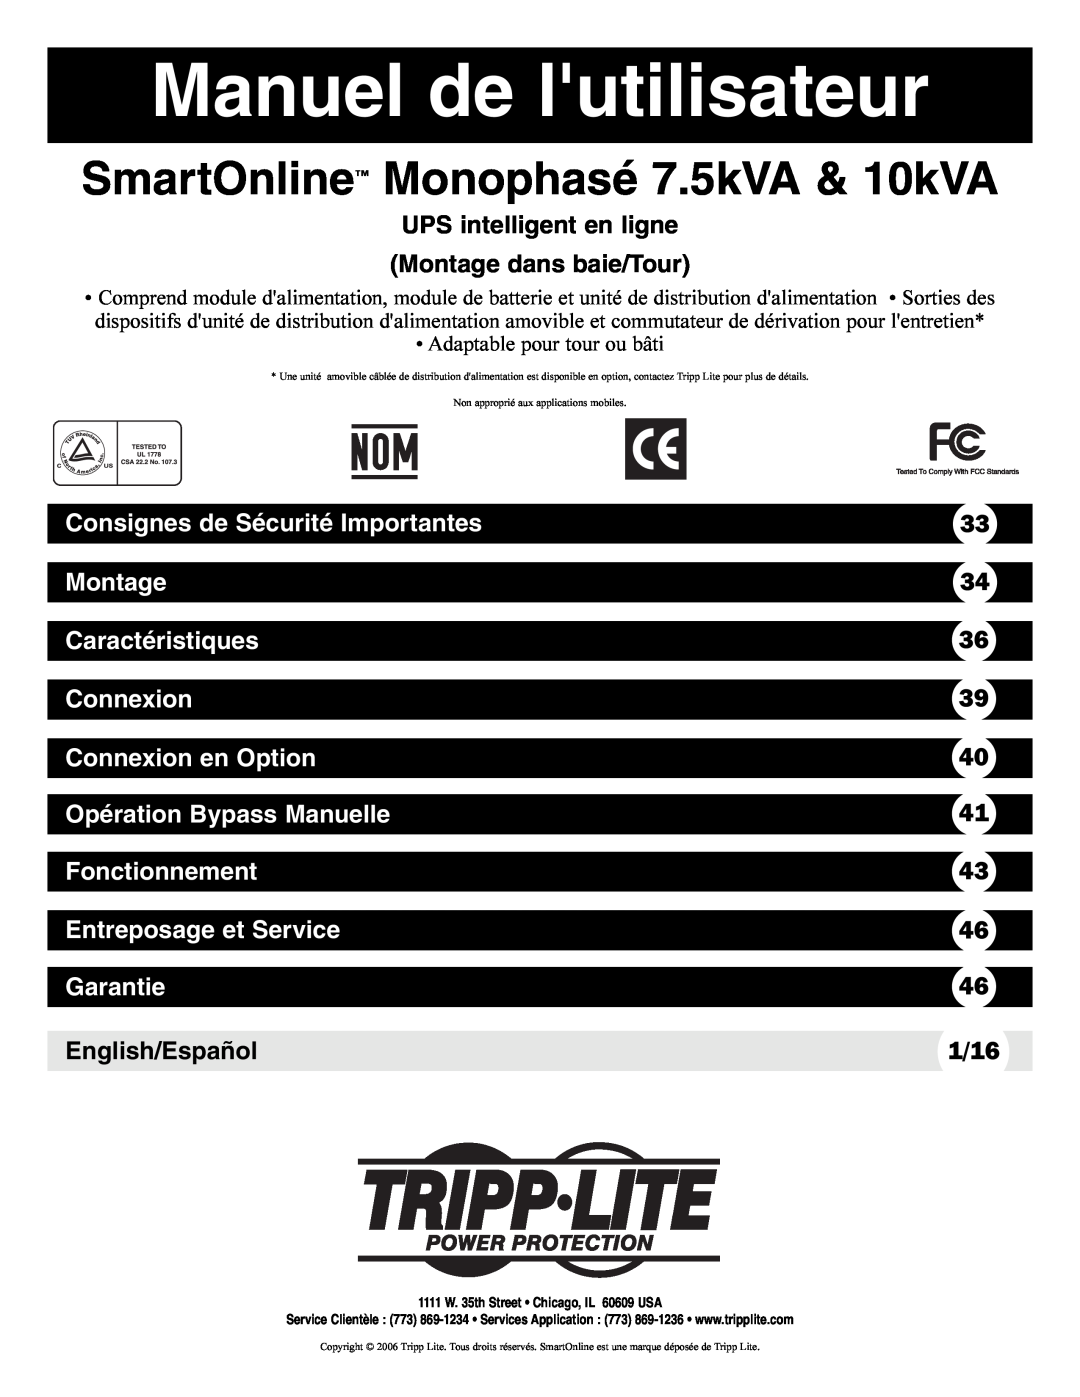 Tripp Lite Single-Phase 7.5kVA Manuel de lutilisateur, SmartOnline Monophasé 7.5kVA & 10kVA, Montage, Caractéristiques 